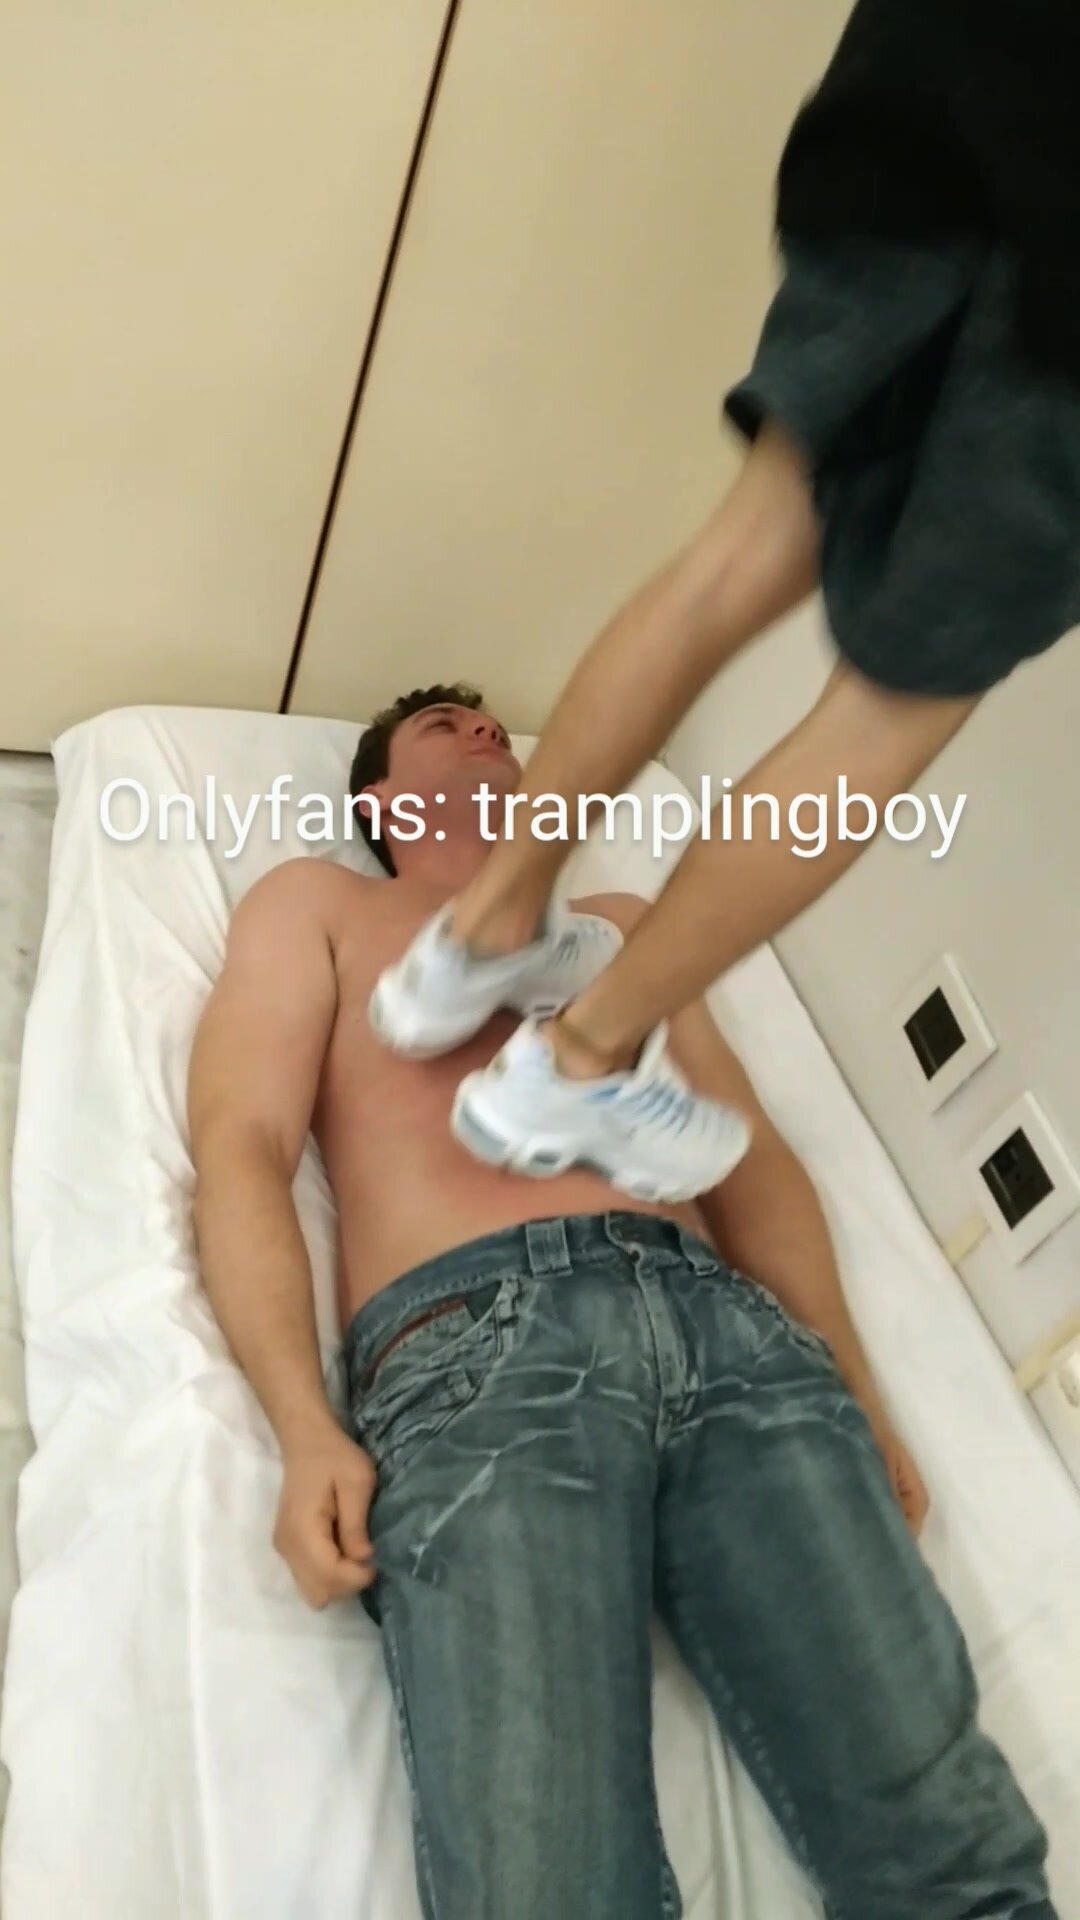 Trampling boy - video 45